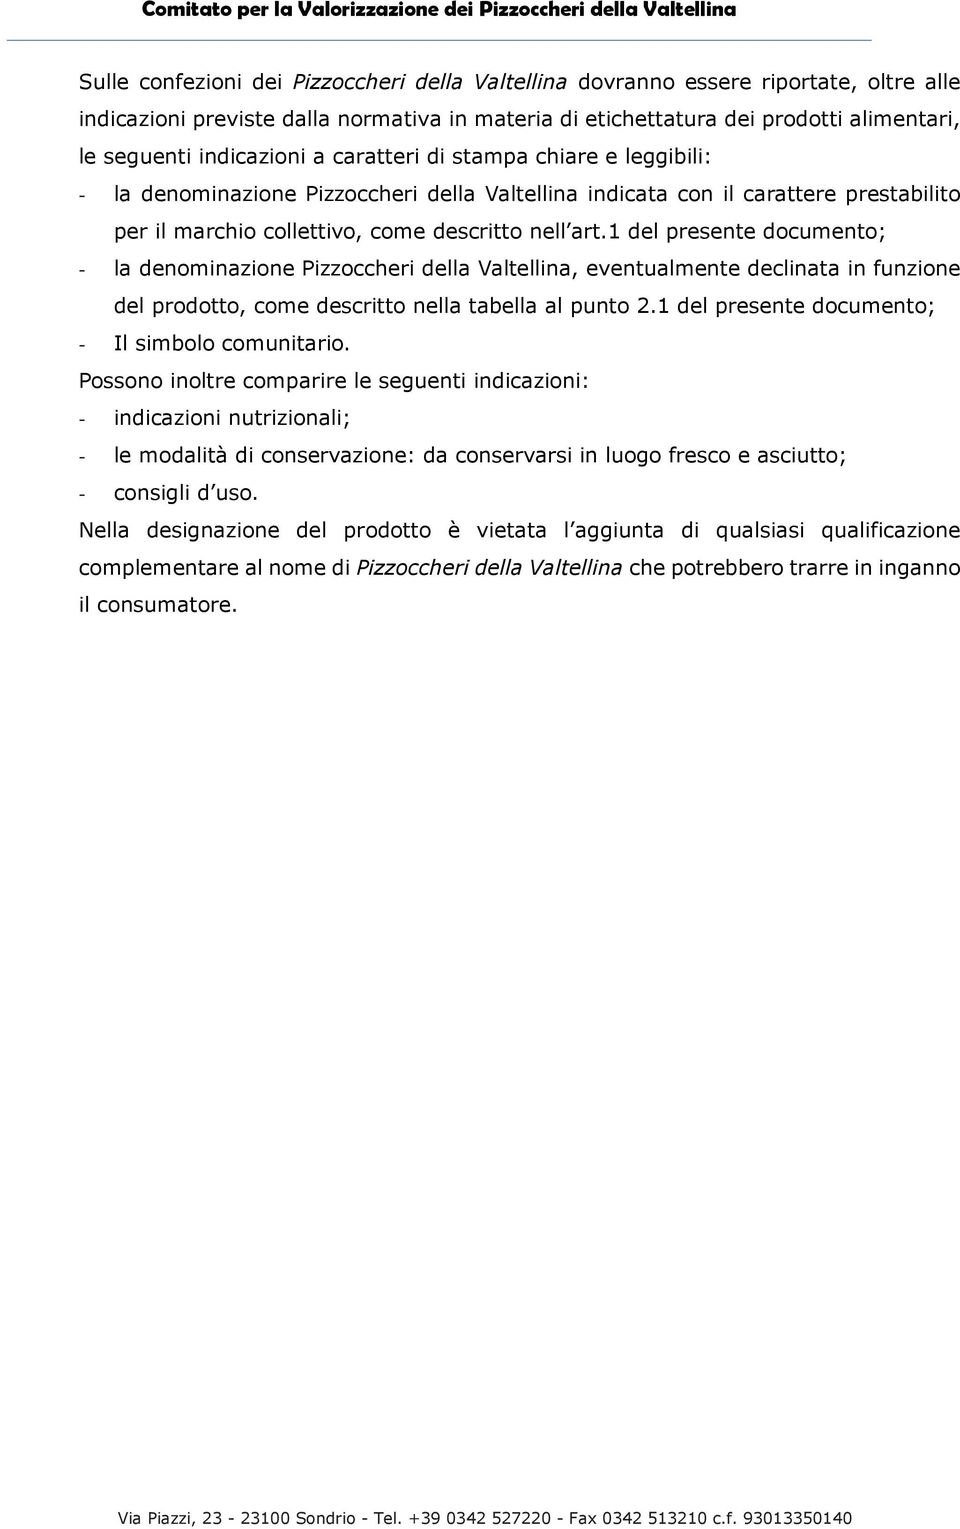 1 del presente documento; - la denominazione Pizzoccheri della Valtellina, eventualmente declinata in funzione del prodotto, come descritto nella tabella al punto 2.